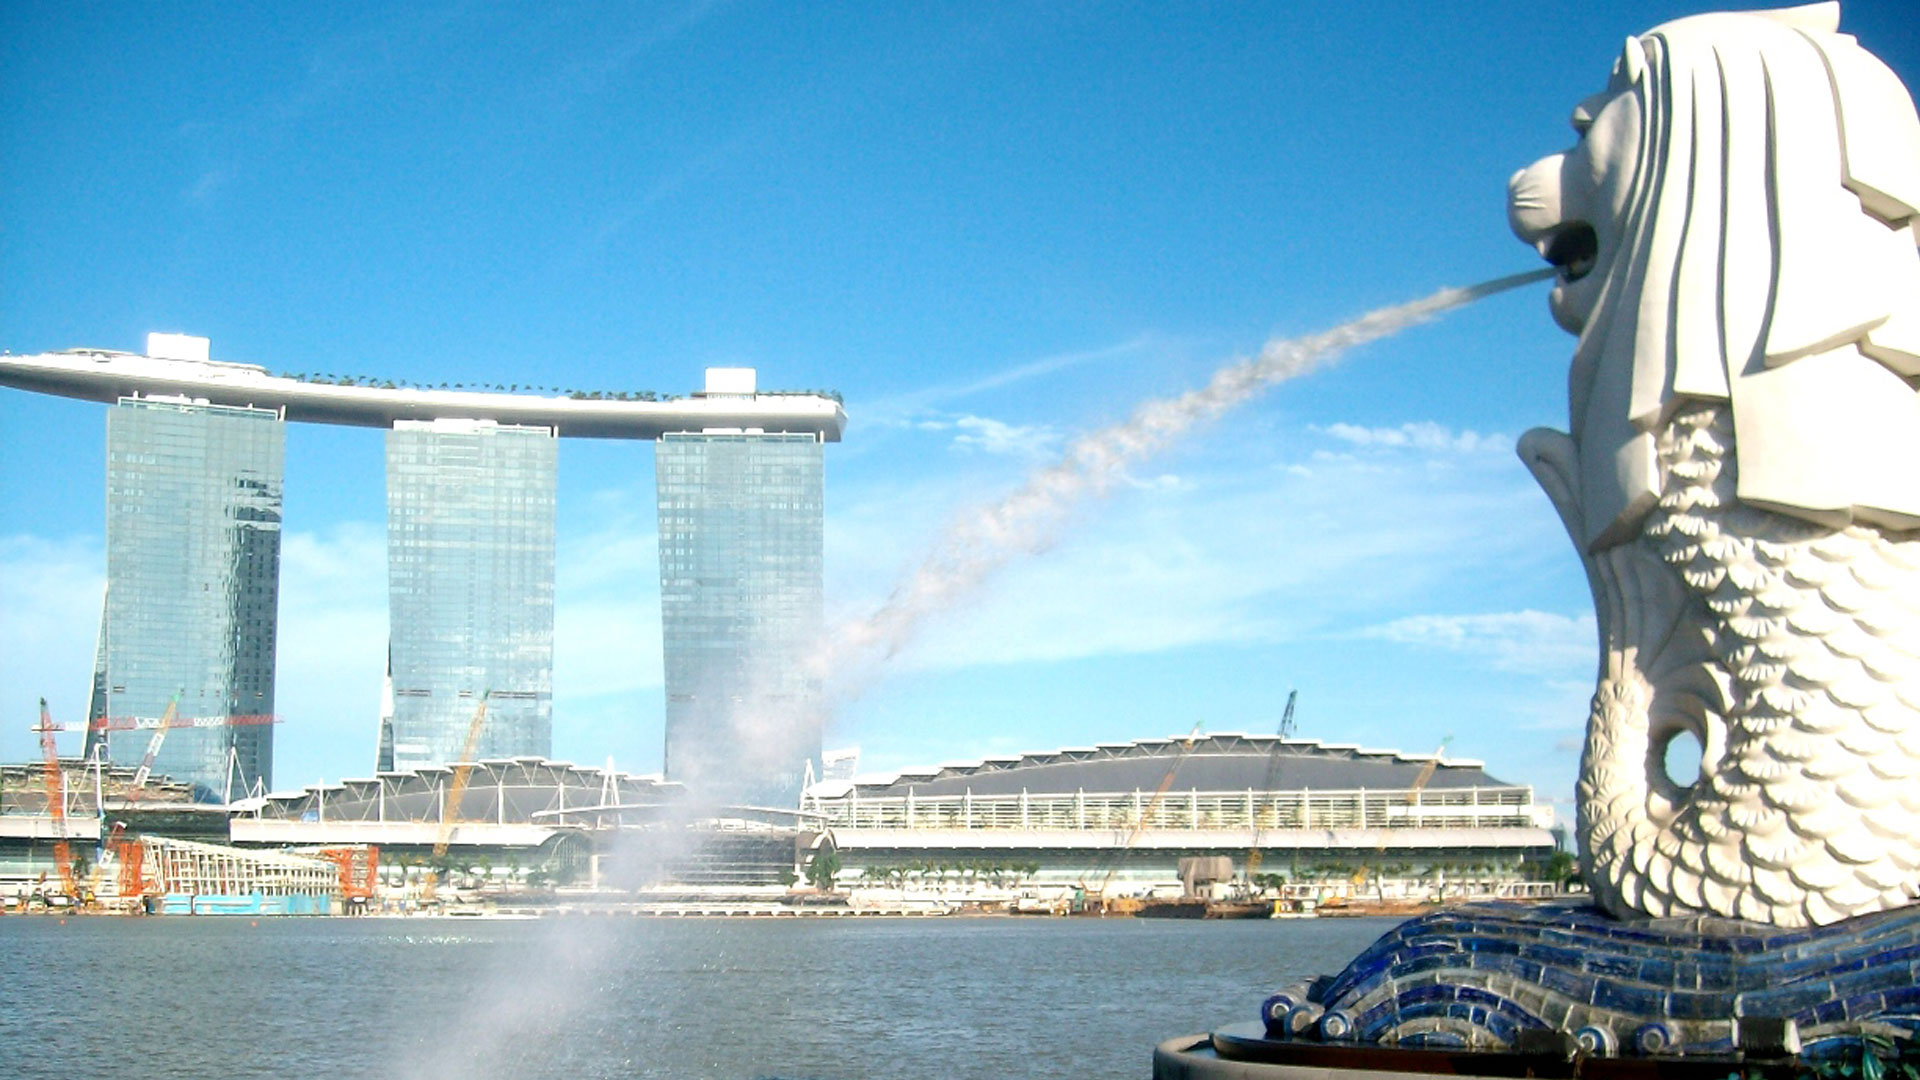 singapour images fond d'écran,zone métropolitaine,ville,jour,ciel,architecture